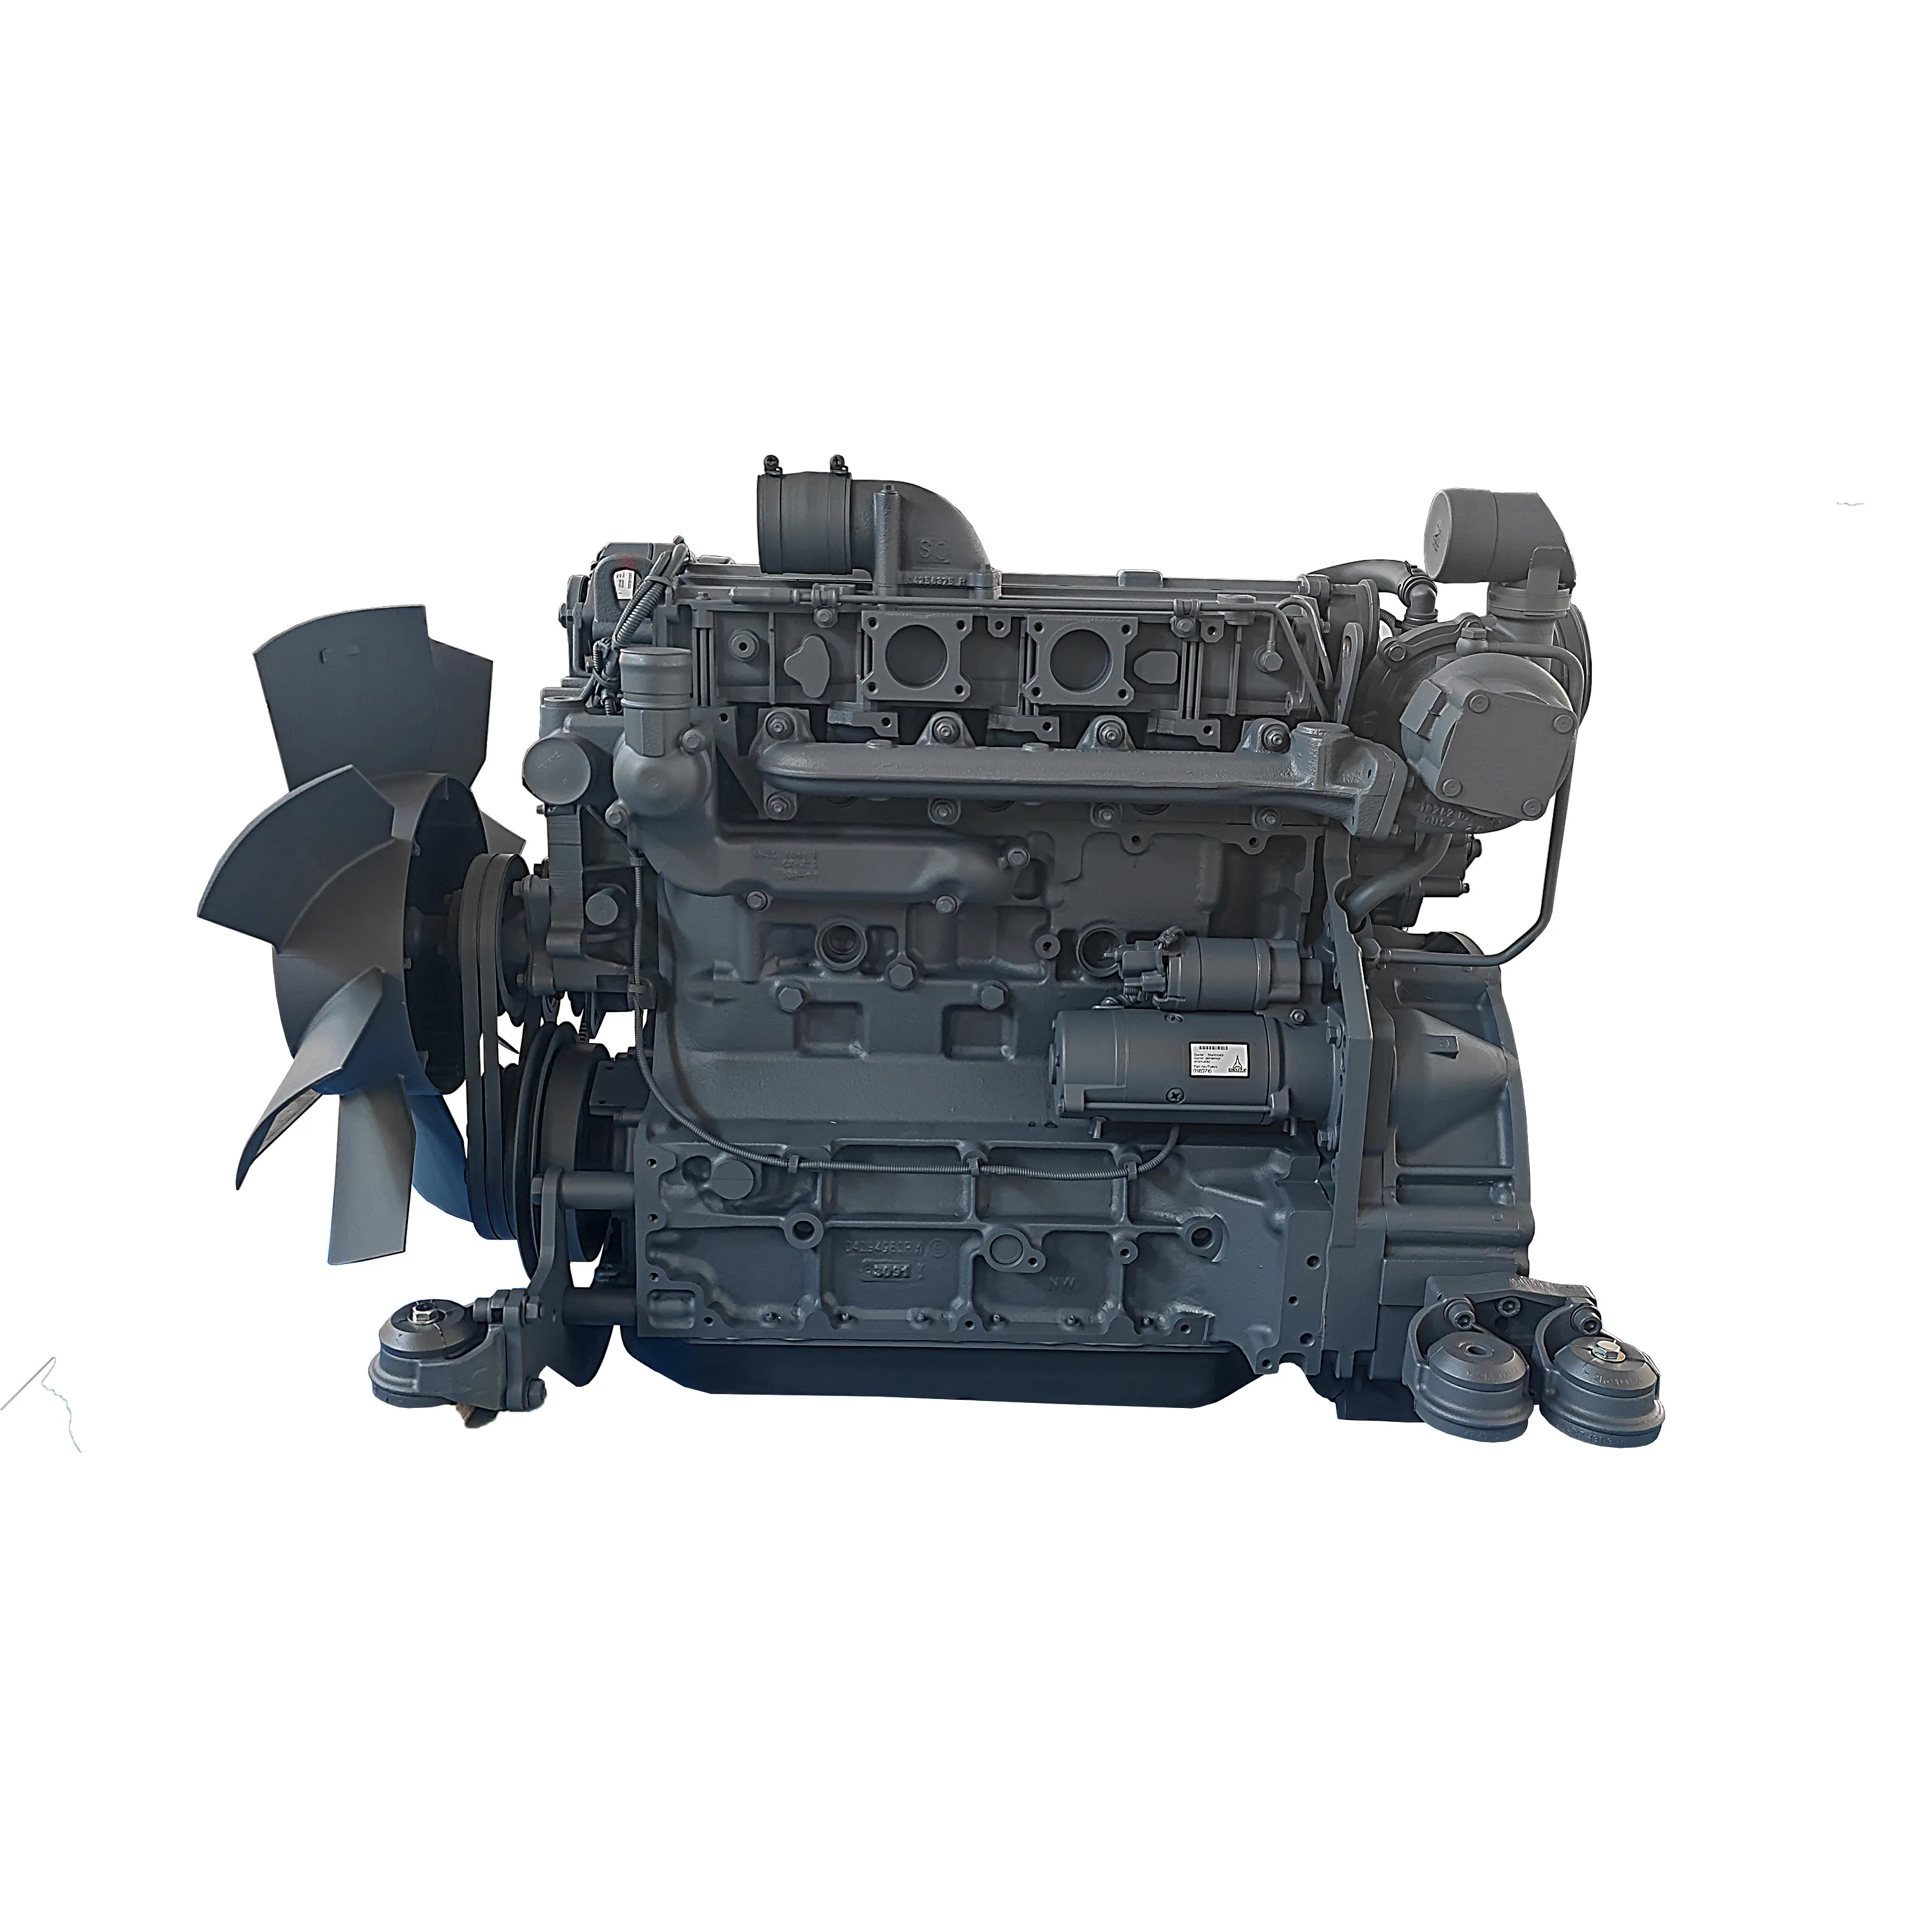 Original Deutz 4 cilindros BF4M1013EC Deutz Motores Motor diésel para maquinaria de construcción